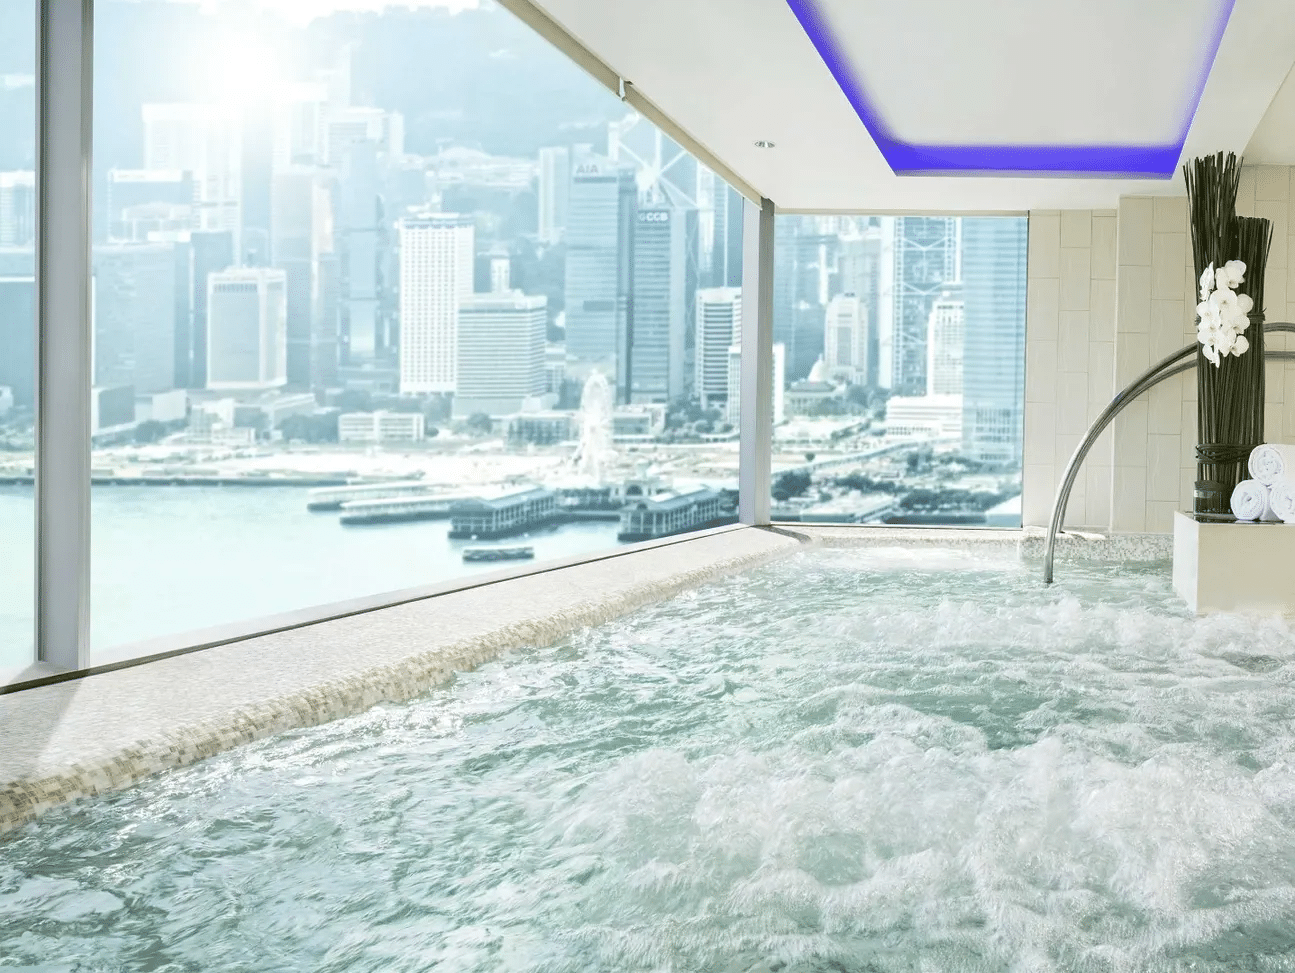 香港W酒店bliss®水療中心